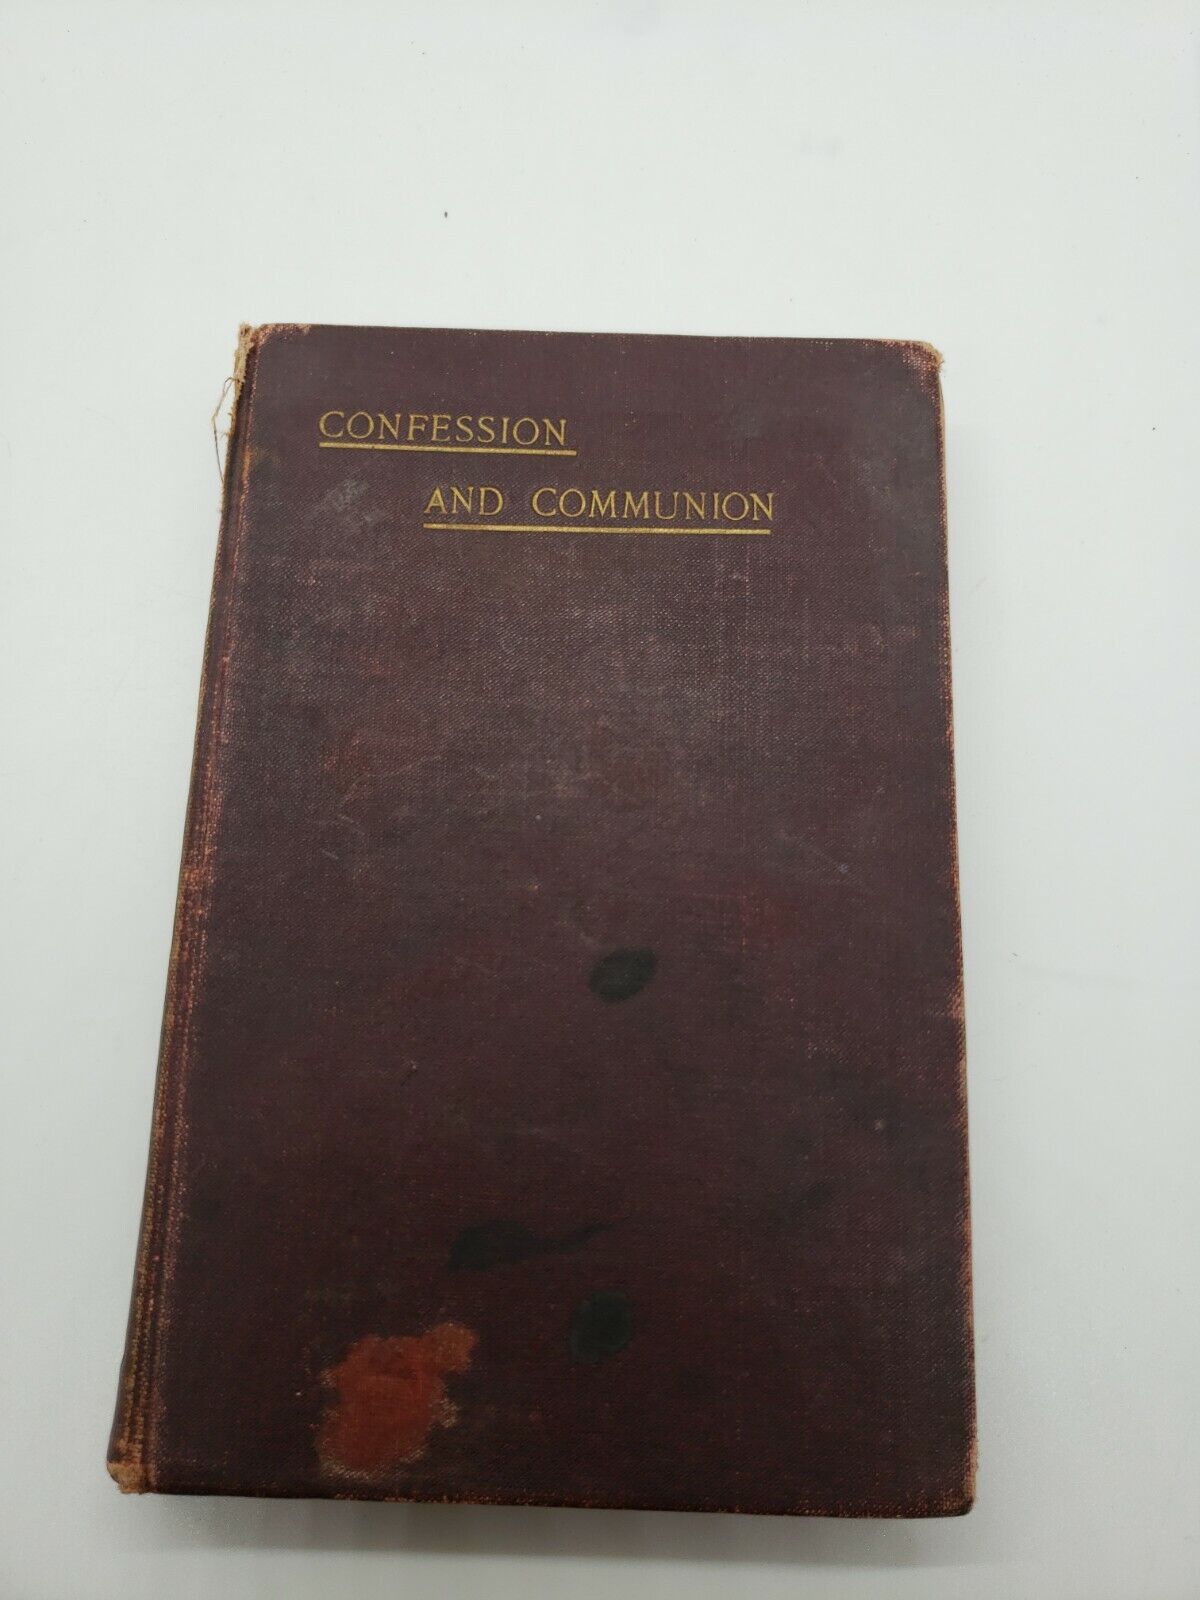 Vintage 1902 Confession & Communion book